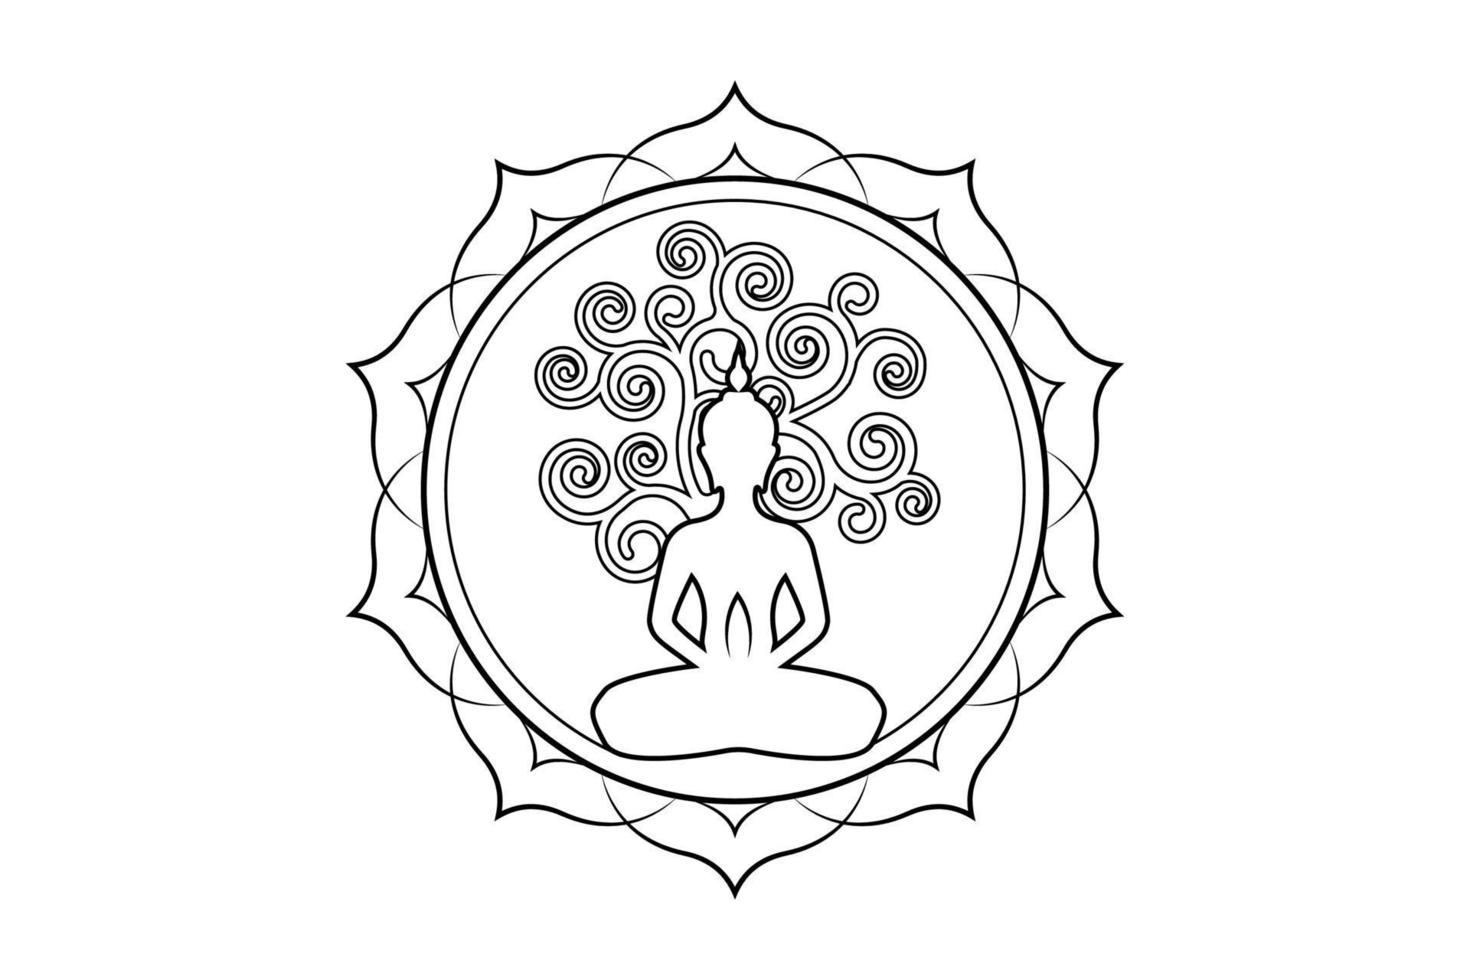 jour de visakha puja, statue de bouddha et arbre de bodhi dans le modèle de logo de lotus sacré. arbre sacré, ficus religiosa, concept d'arbre de vie. vecteur isolé sur fond blanc